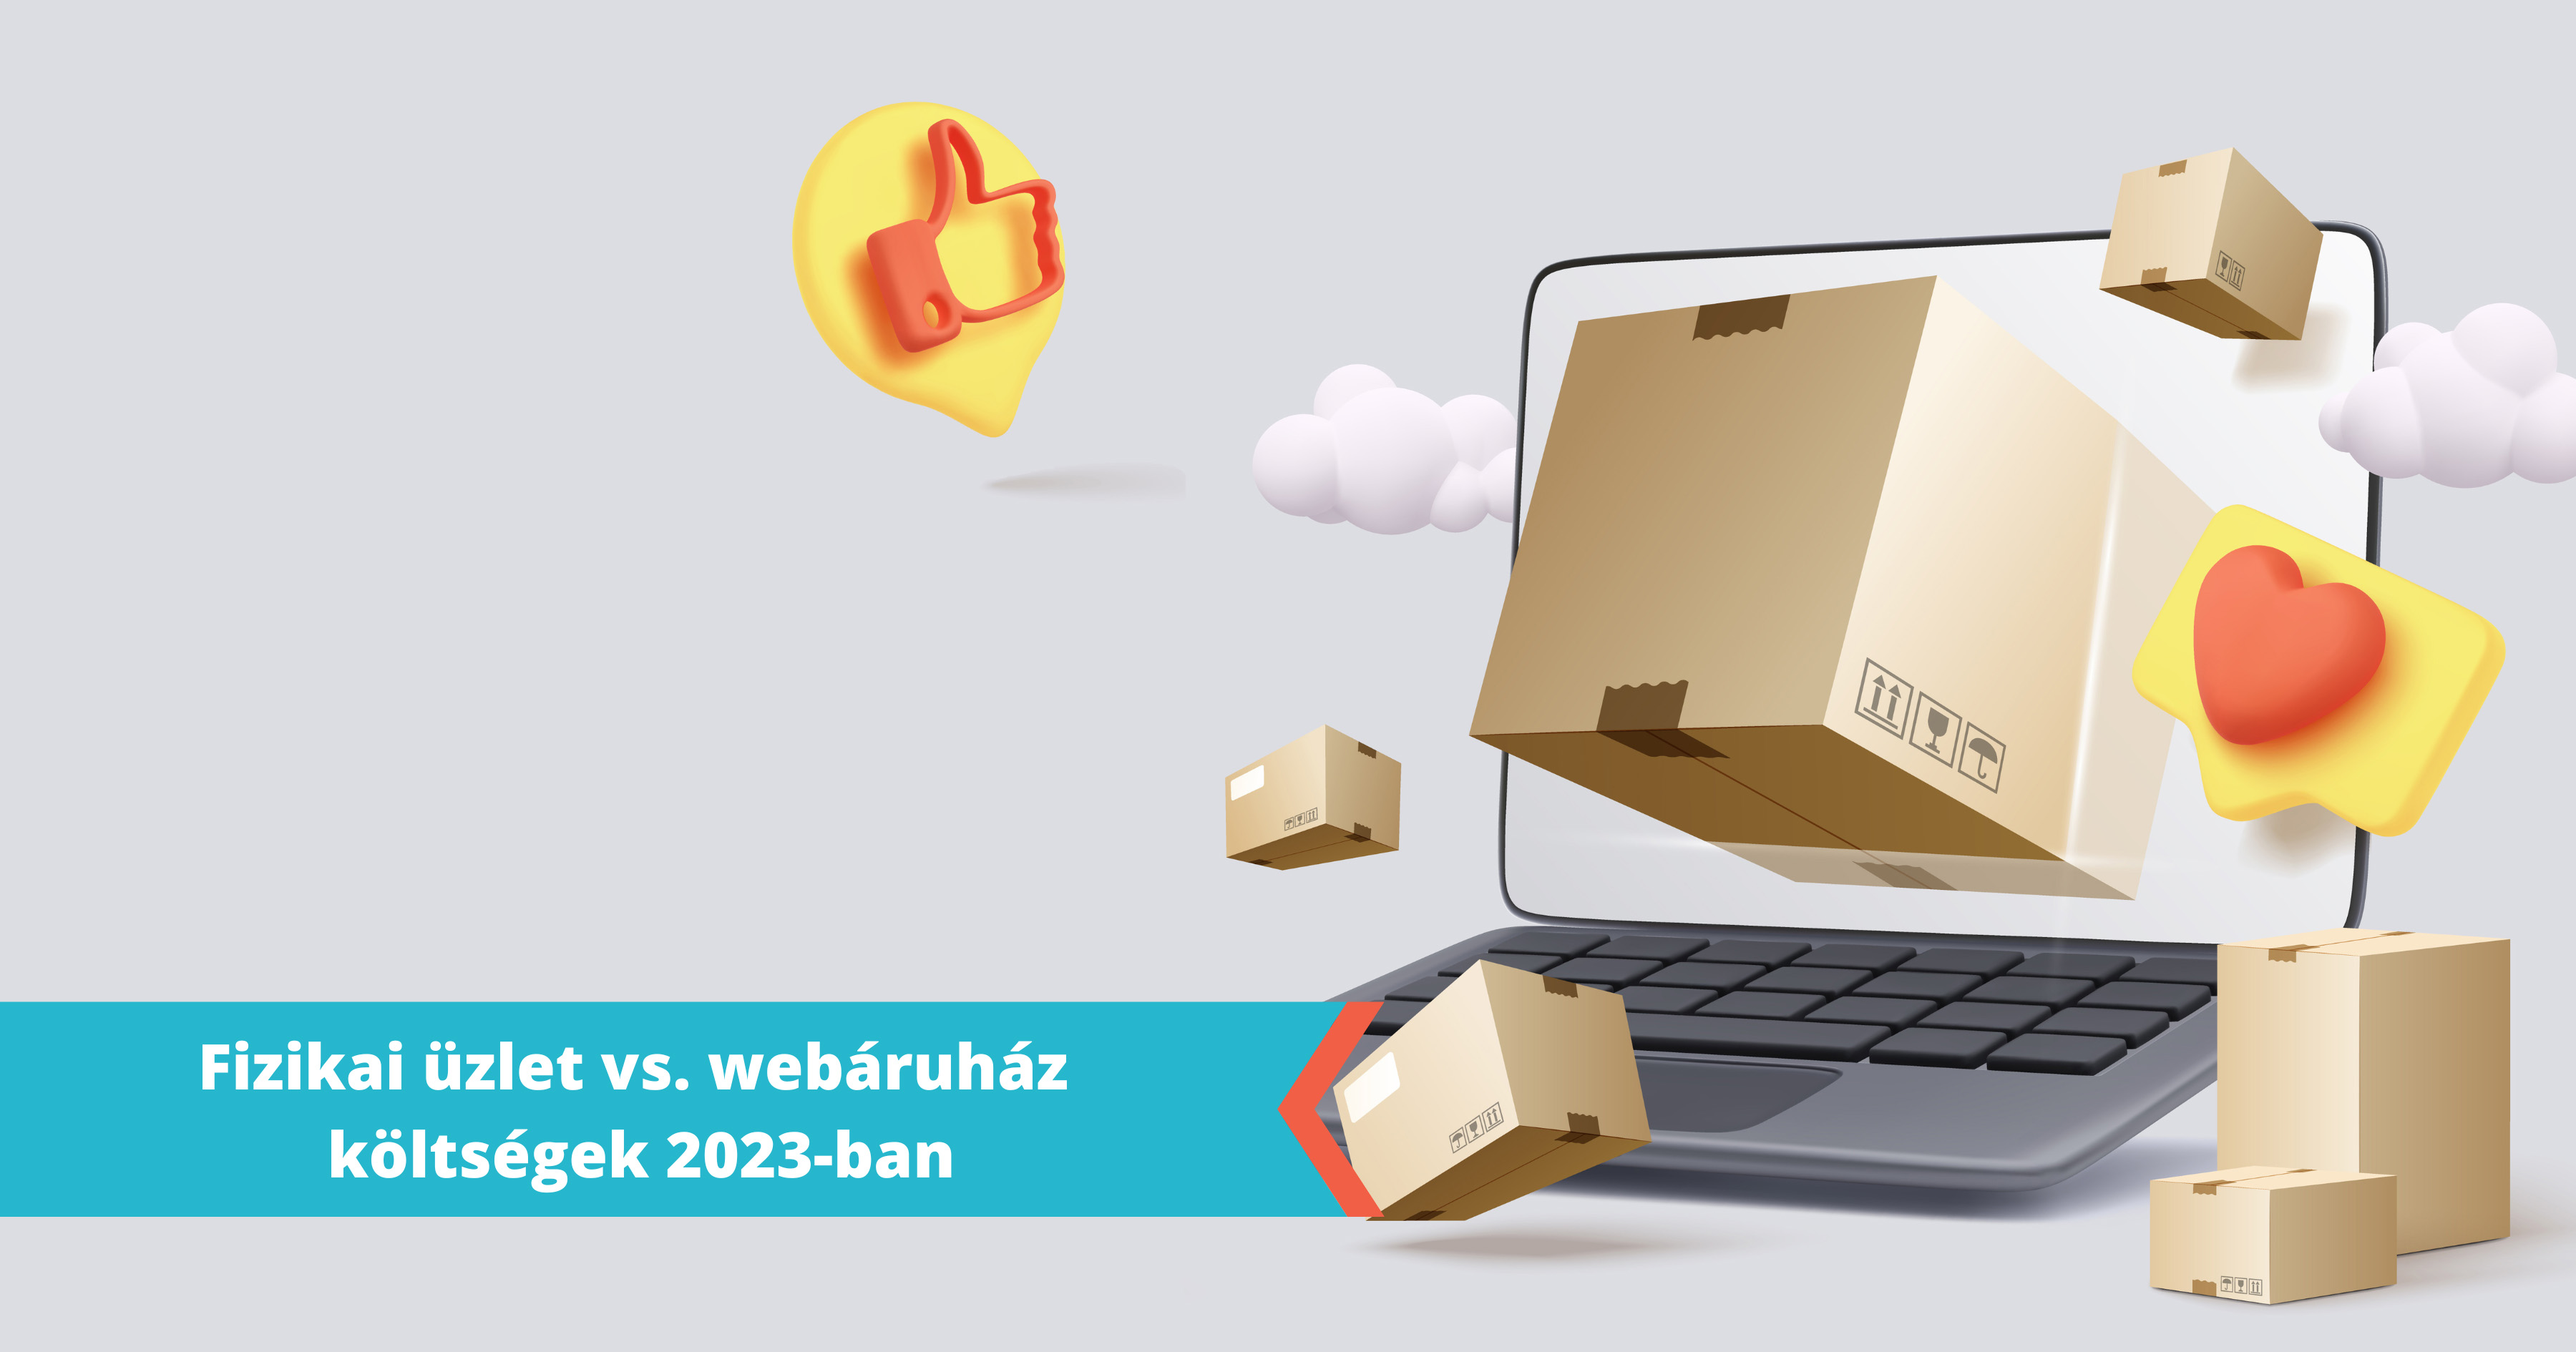 A webshopok előnyei nem csak az online térben jelennek meg: Egy fizikai üzlet és egy online webáruház felállítási és működési költségei 2023-ban. Pro és kontra, melyik éri meg jobban?